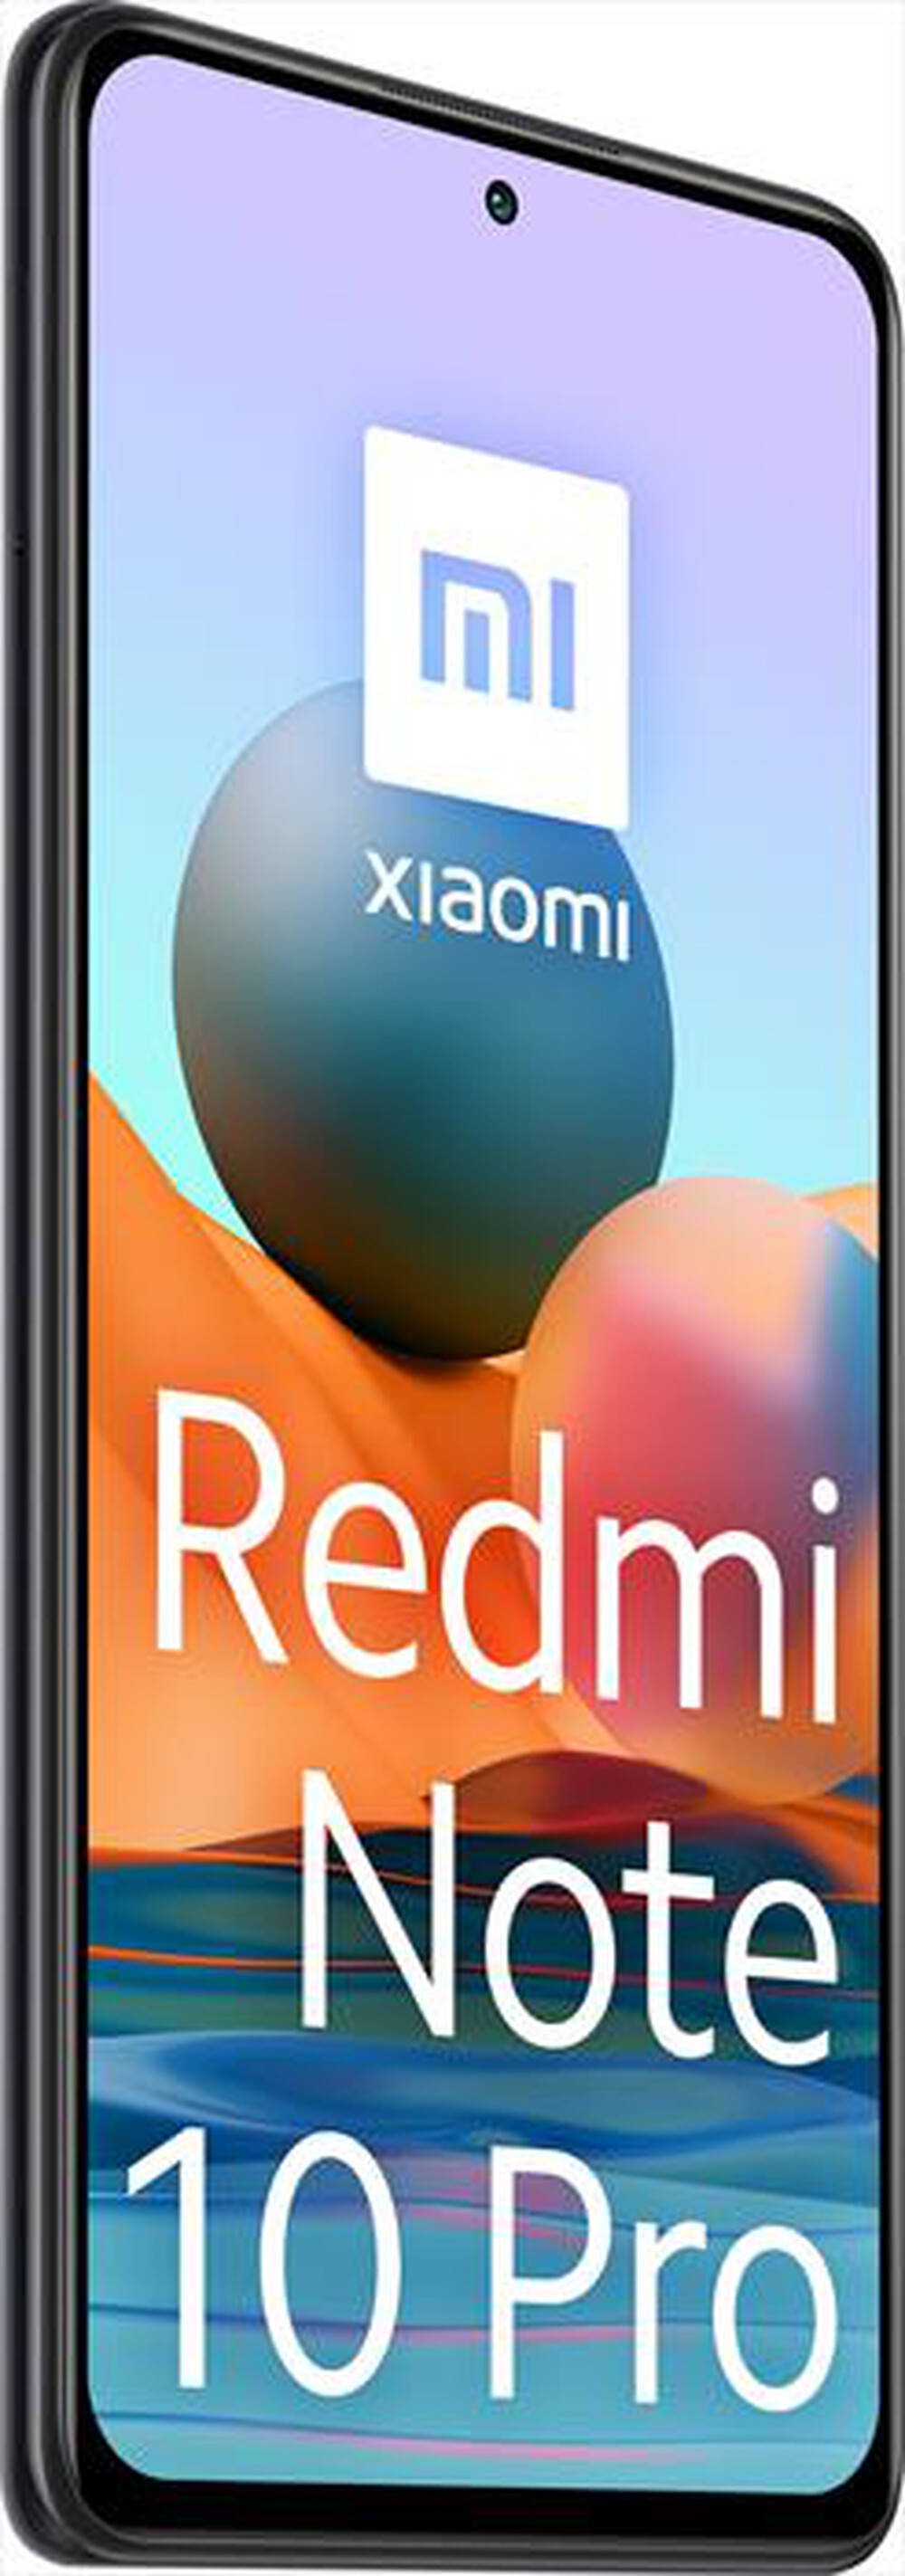 "XIAOMI - SMARTPHONE REDMI NOTE 10 PRO 6+128GB-Onyx Gray"